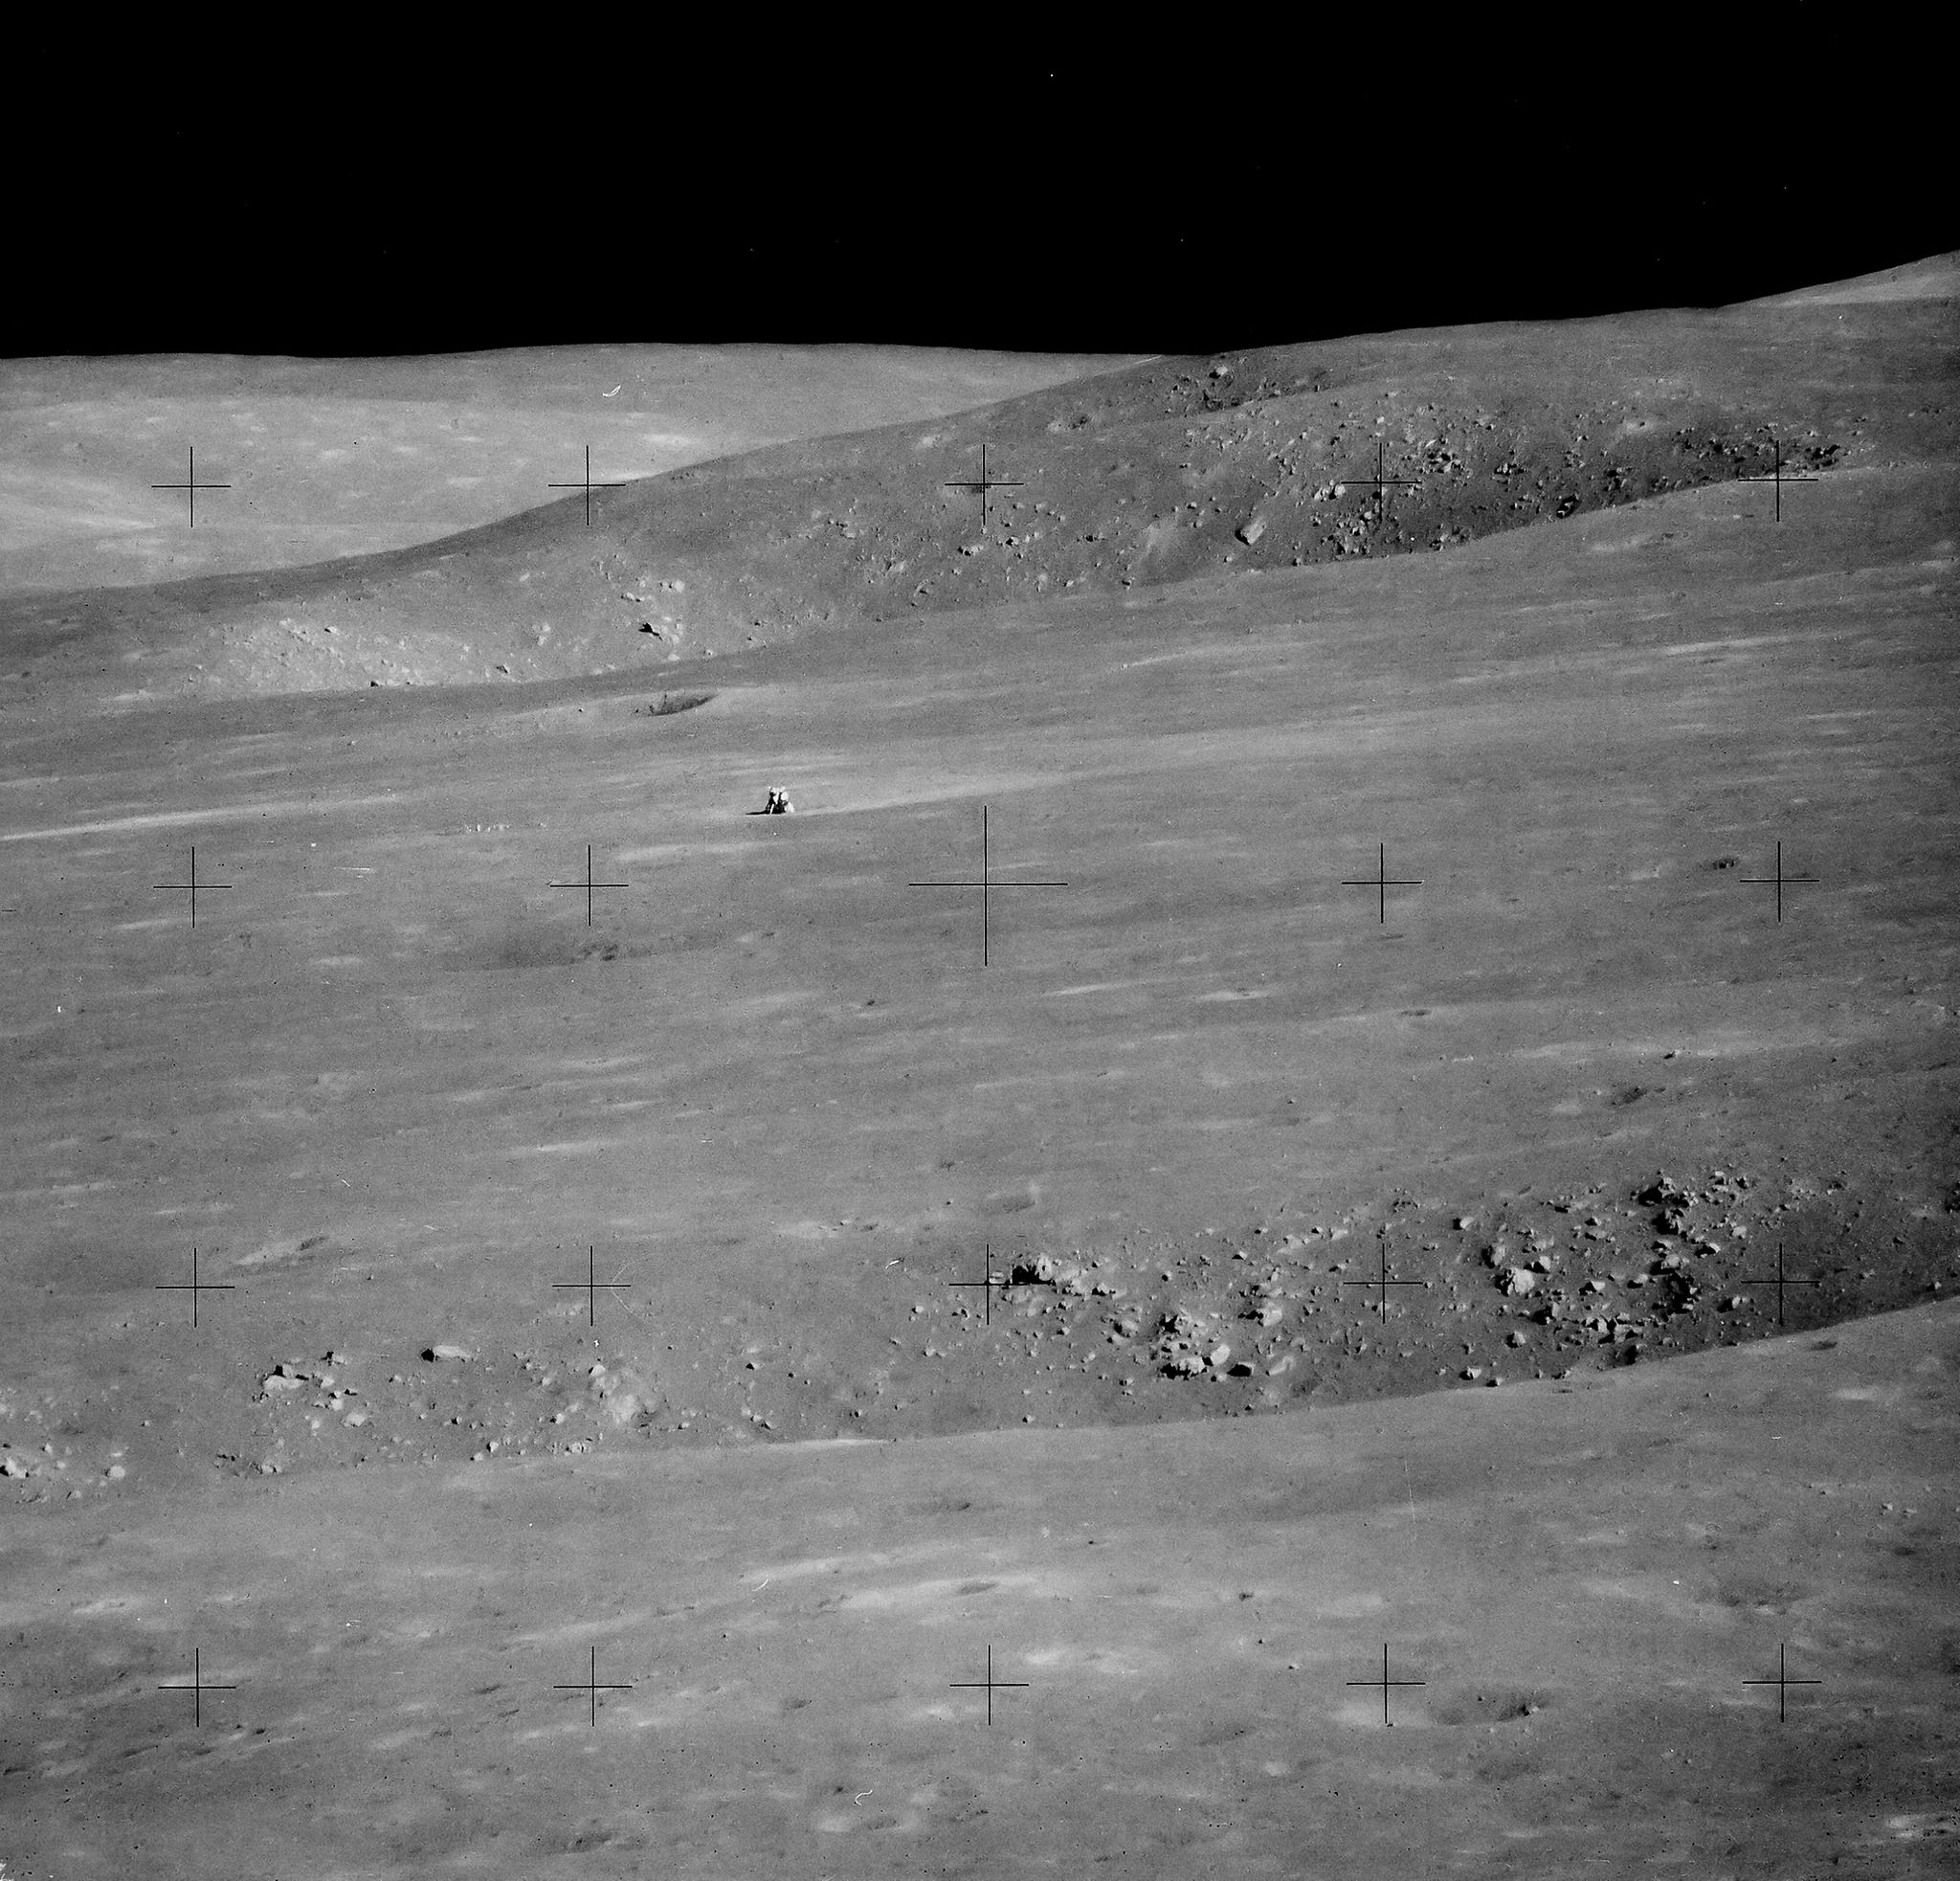 David Scott - The LM “Falcon” in the desolate lunar landscape of Hadley Apennine, EVA 2, Apollo